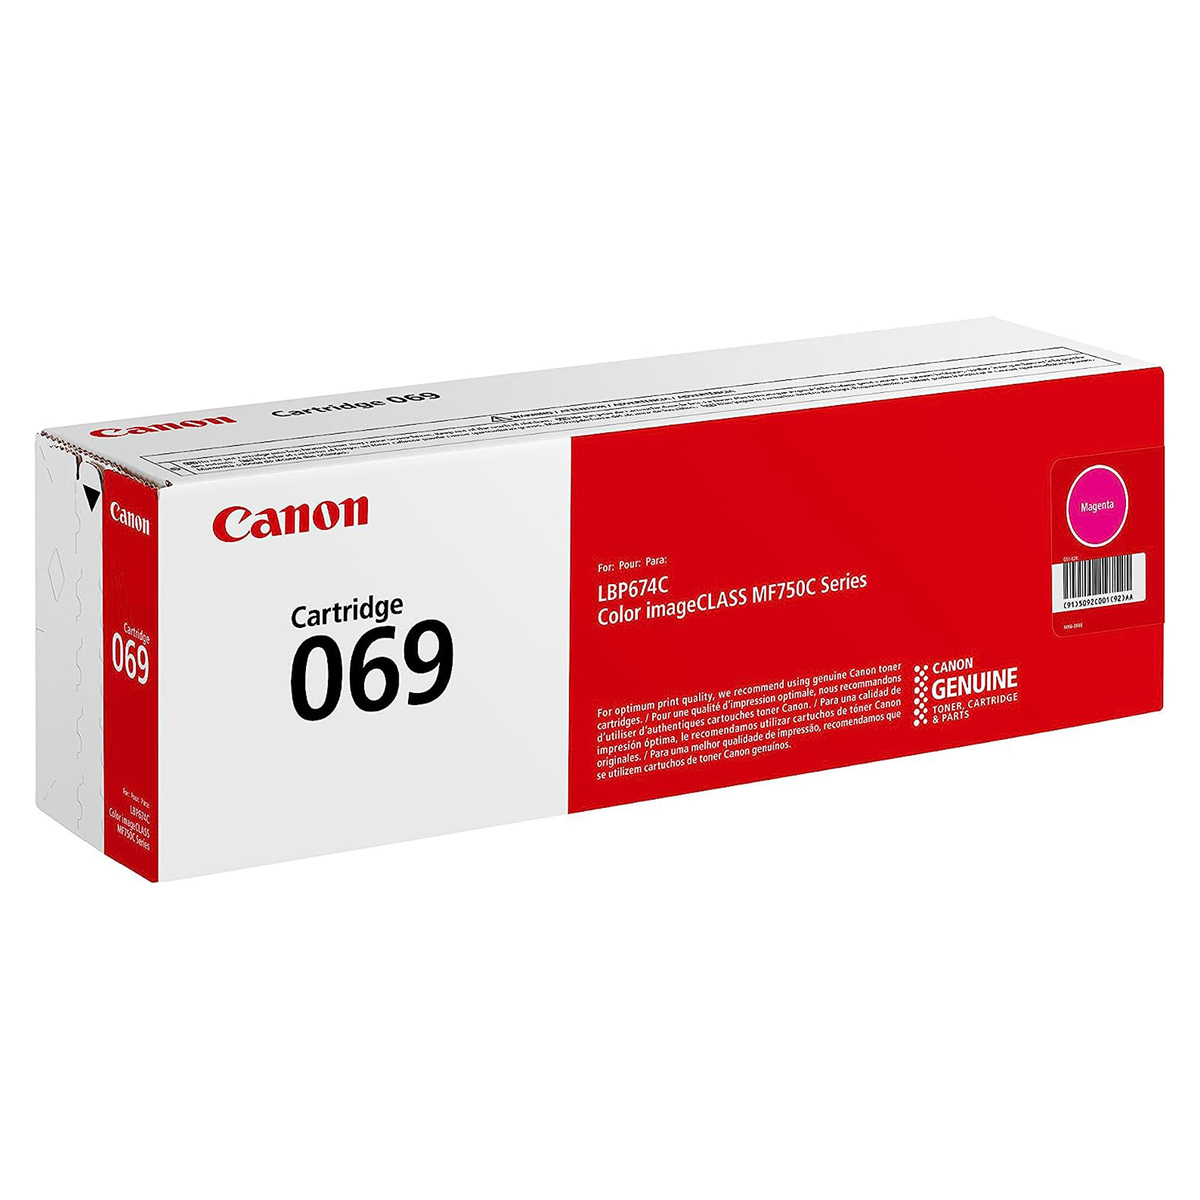 Canon Toner Cartridge, Magenta, 069